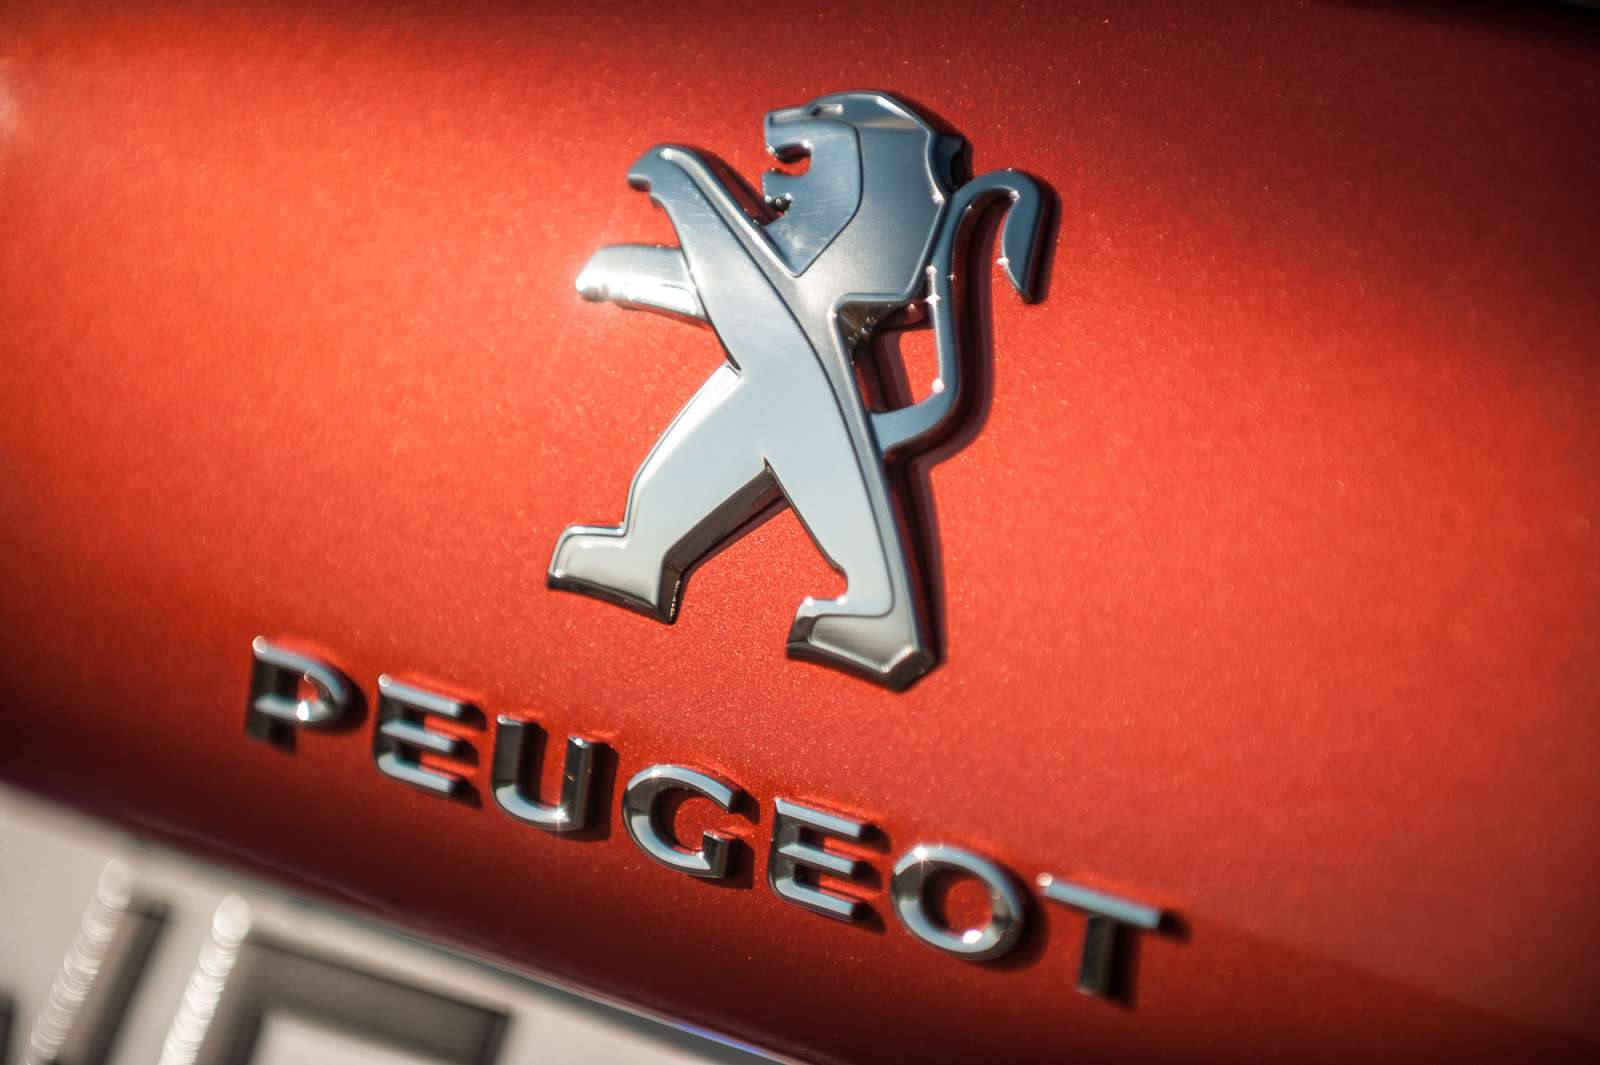 Peugeot 2008 1.2 PureTech Allure